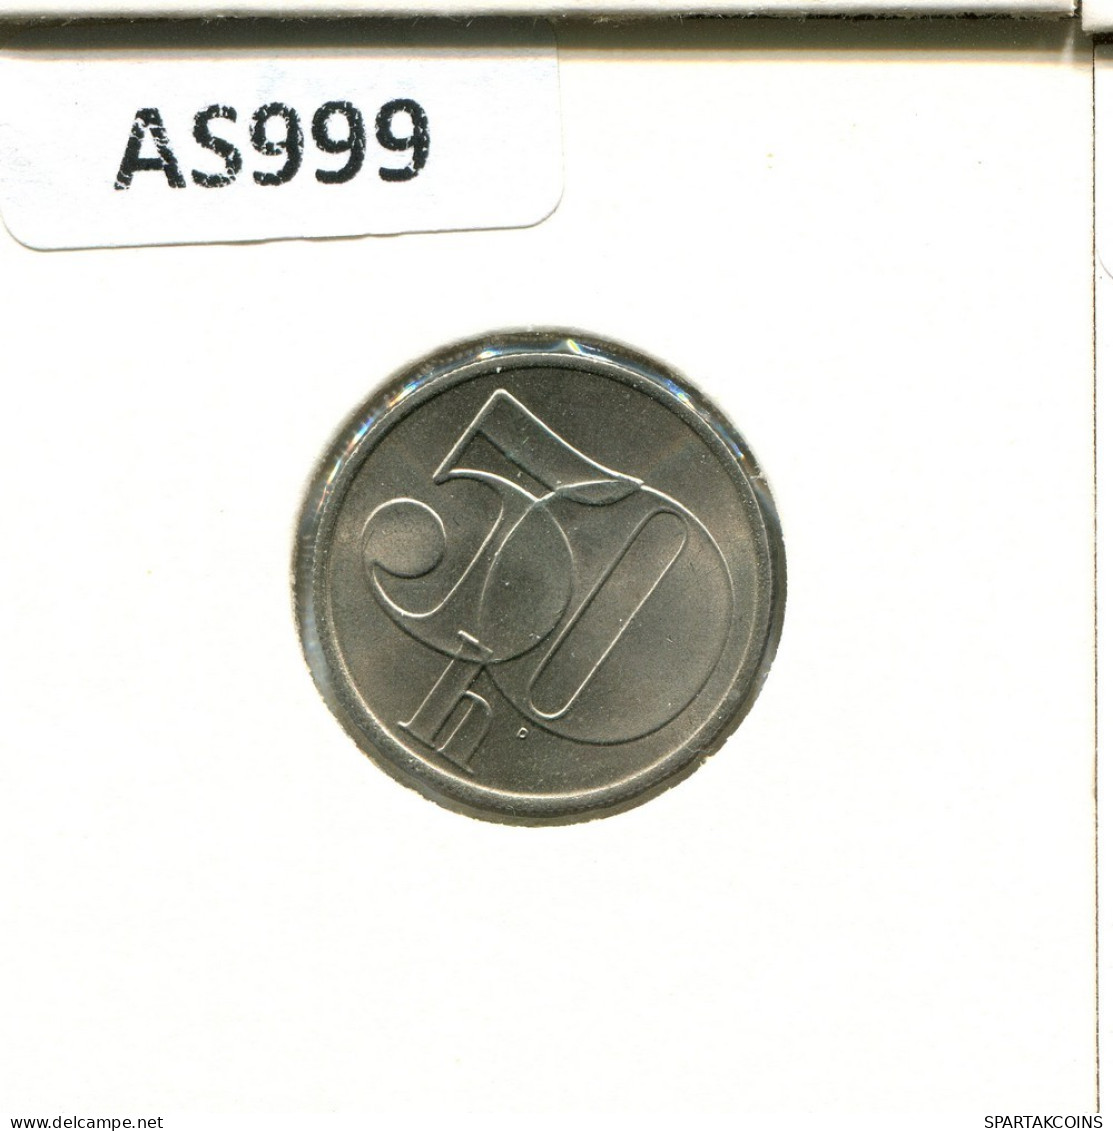 50 HALERU 1991 CHECOSLOVAQUIA CZECHOESLOVAQUIA SLOVAKIA Moneda #AS999.E.A - Tsjechoslowakije